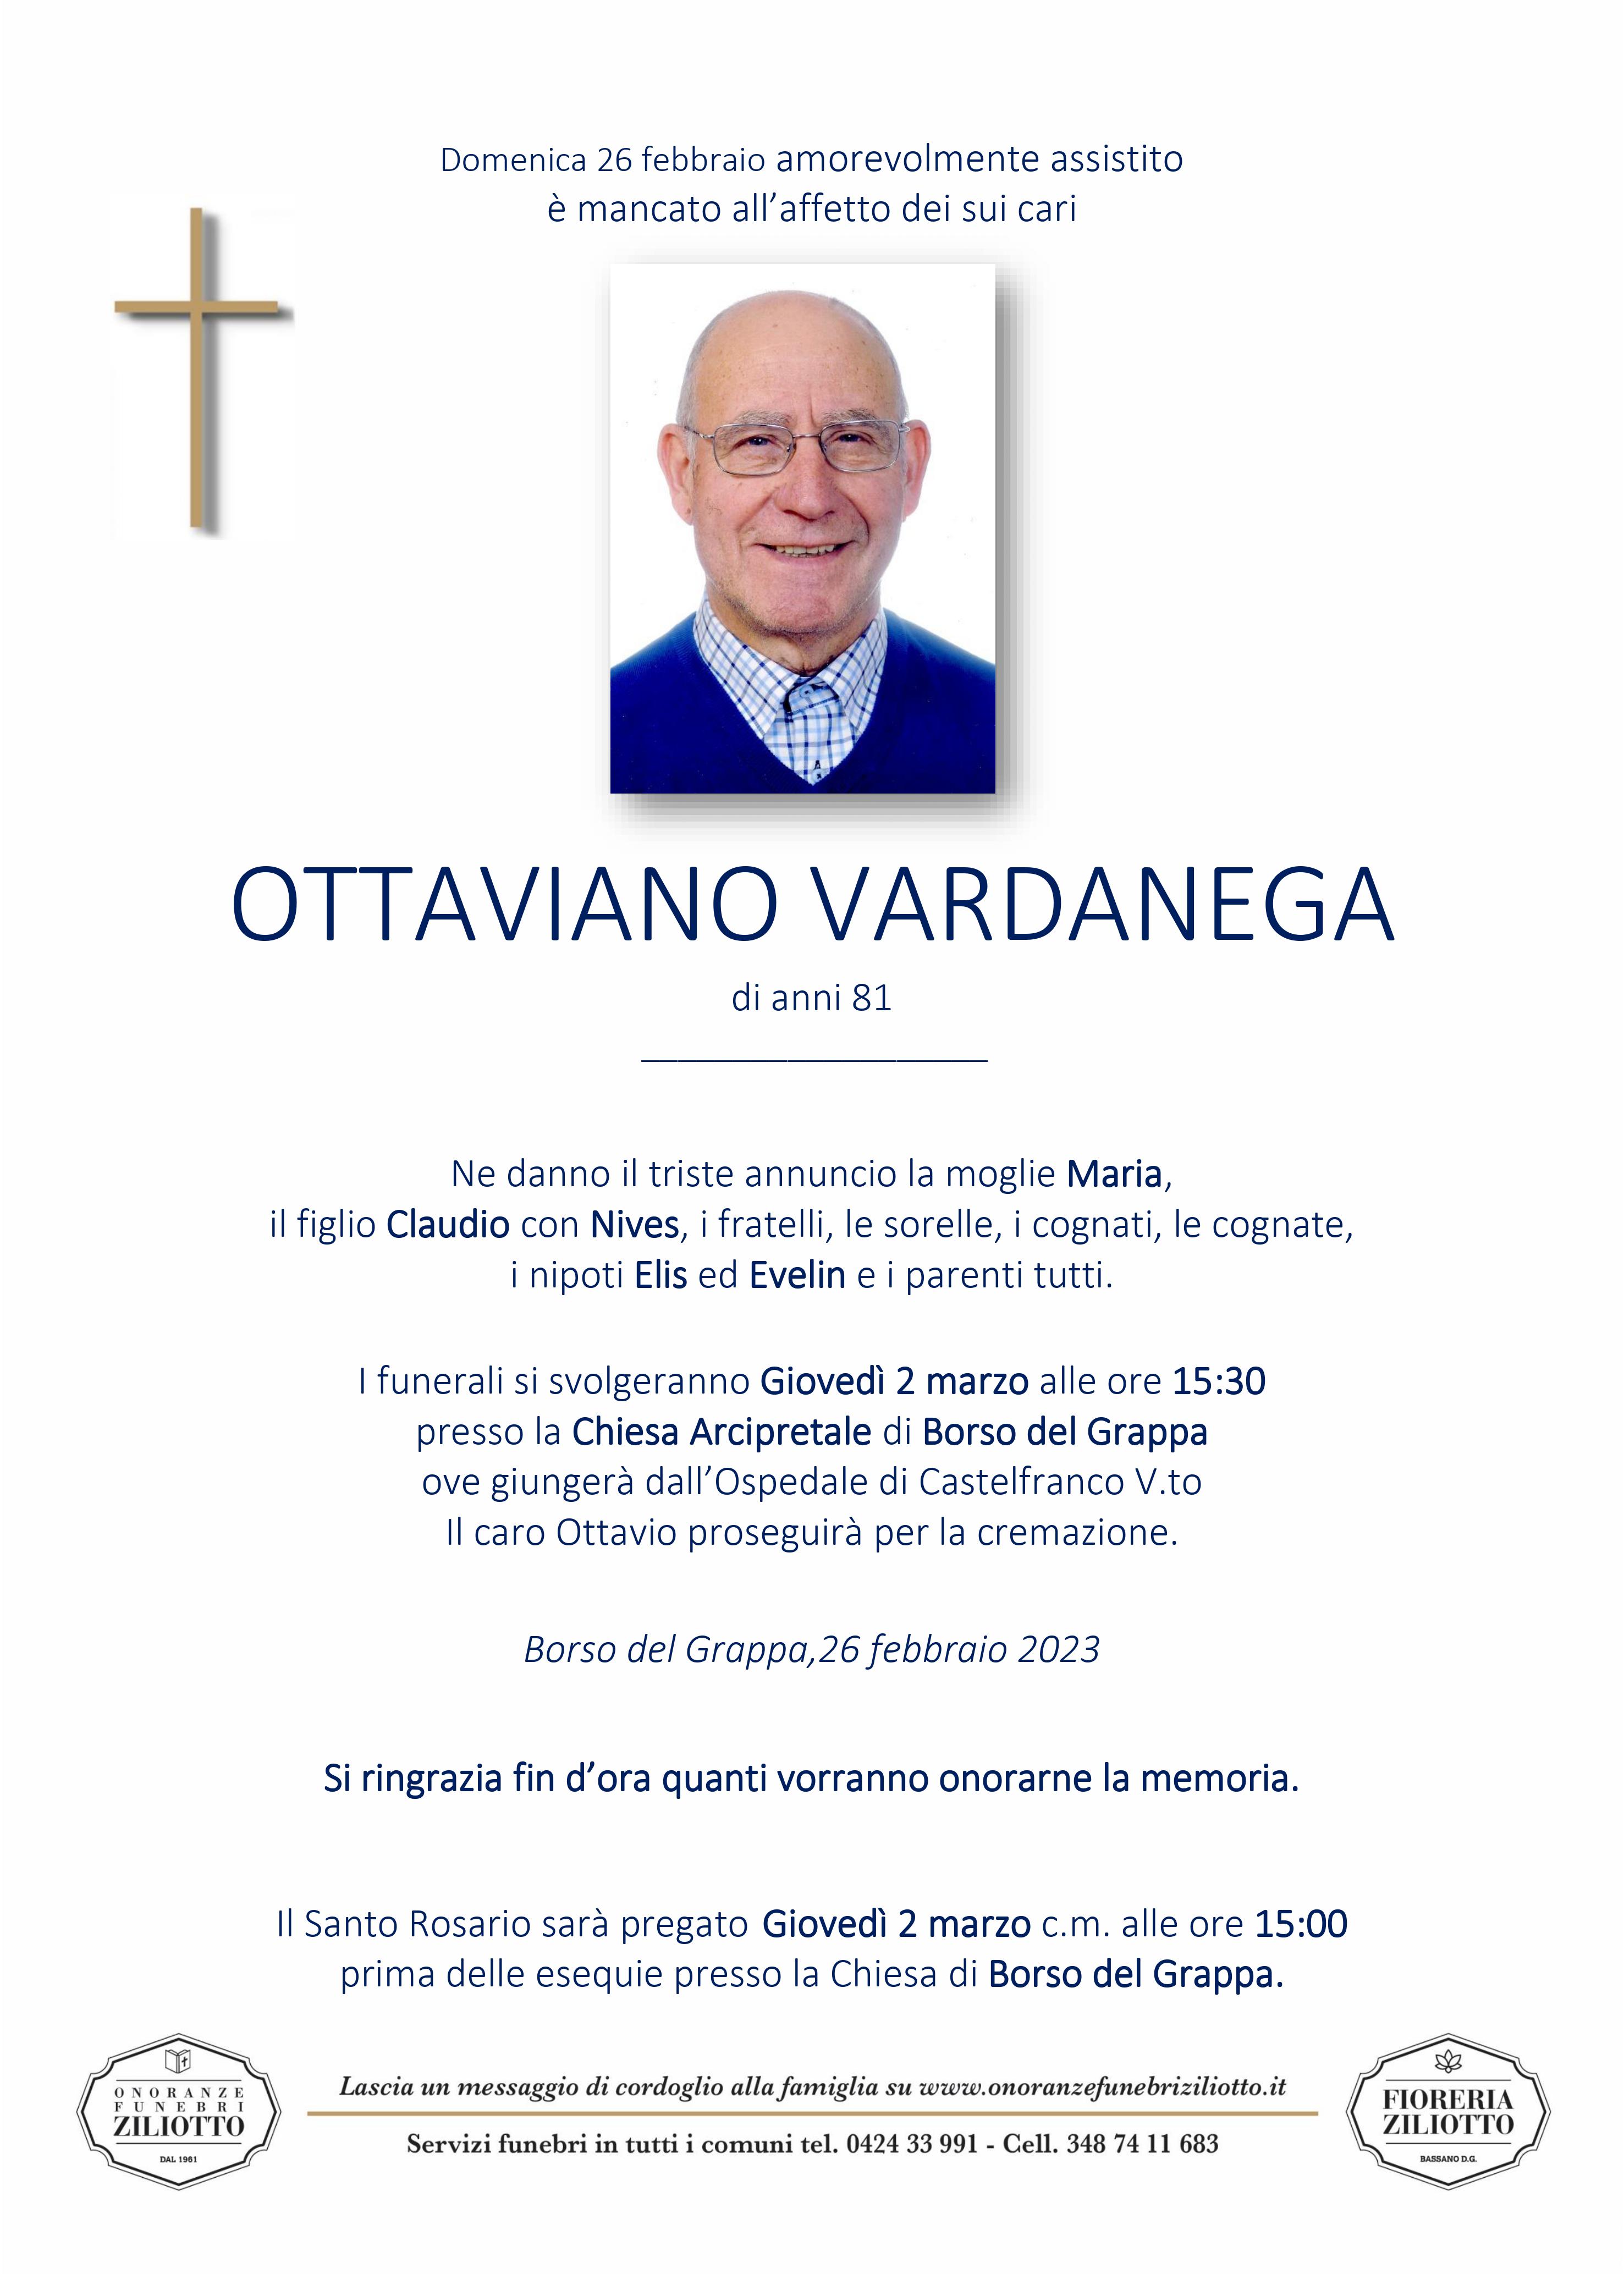 Ottaviano Vardanega - 81 anni - Borso del Grappa